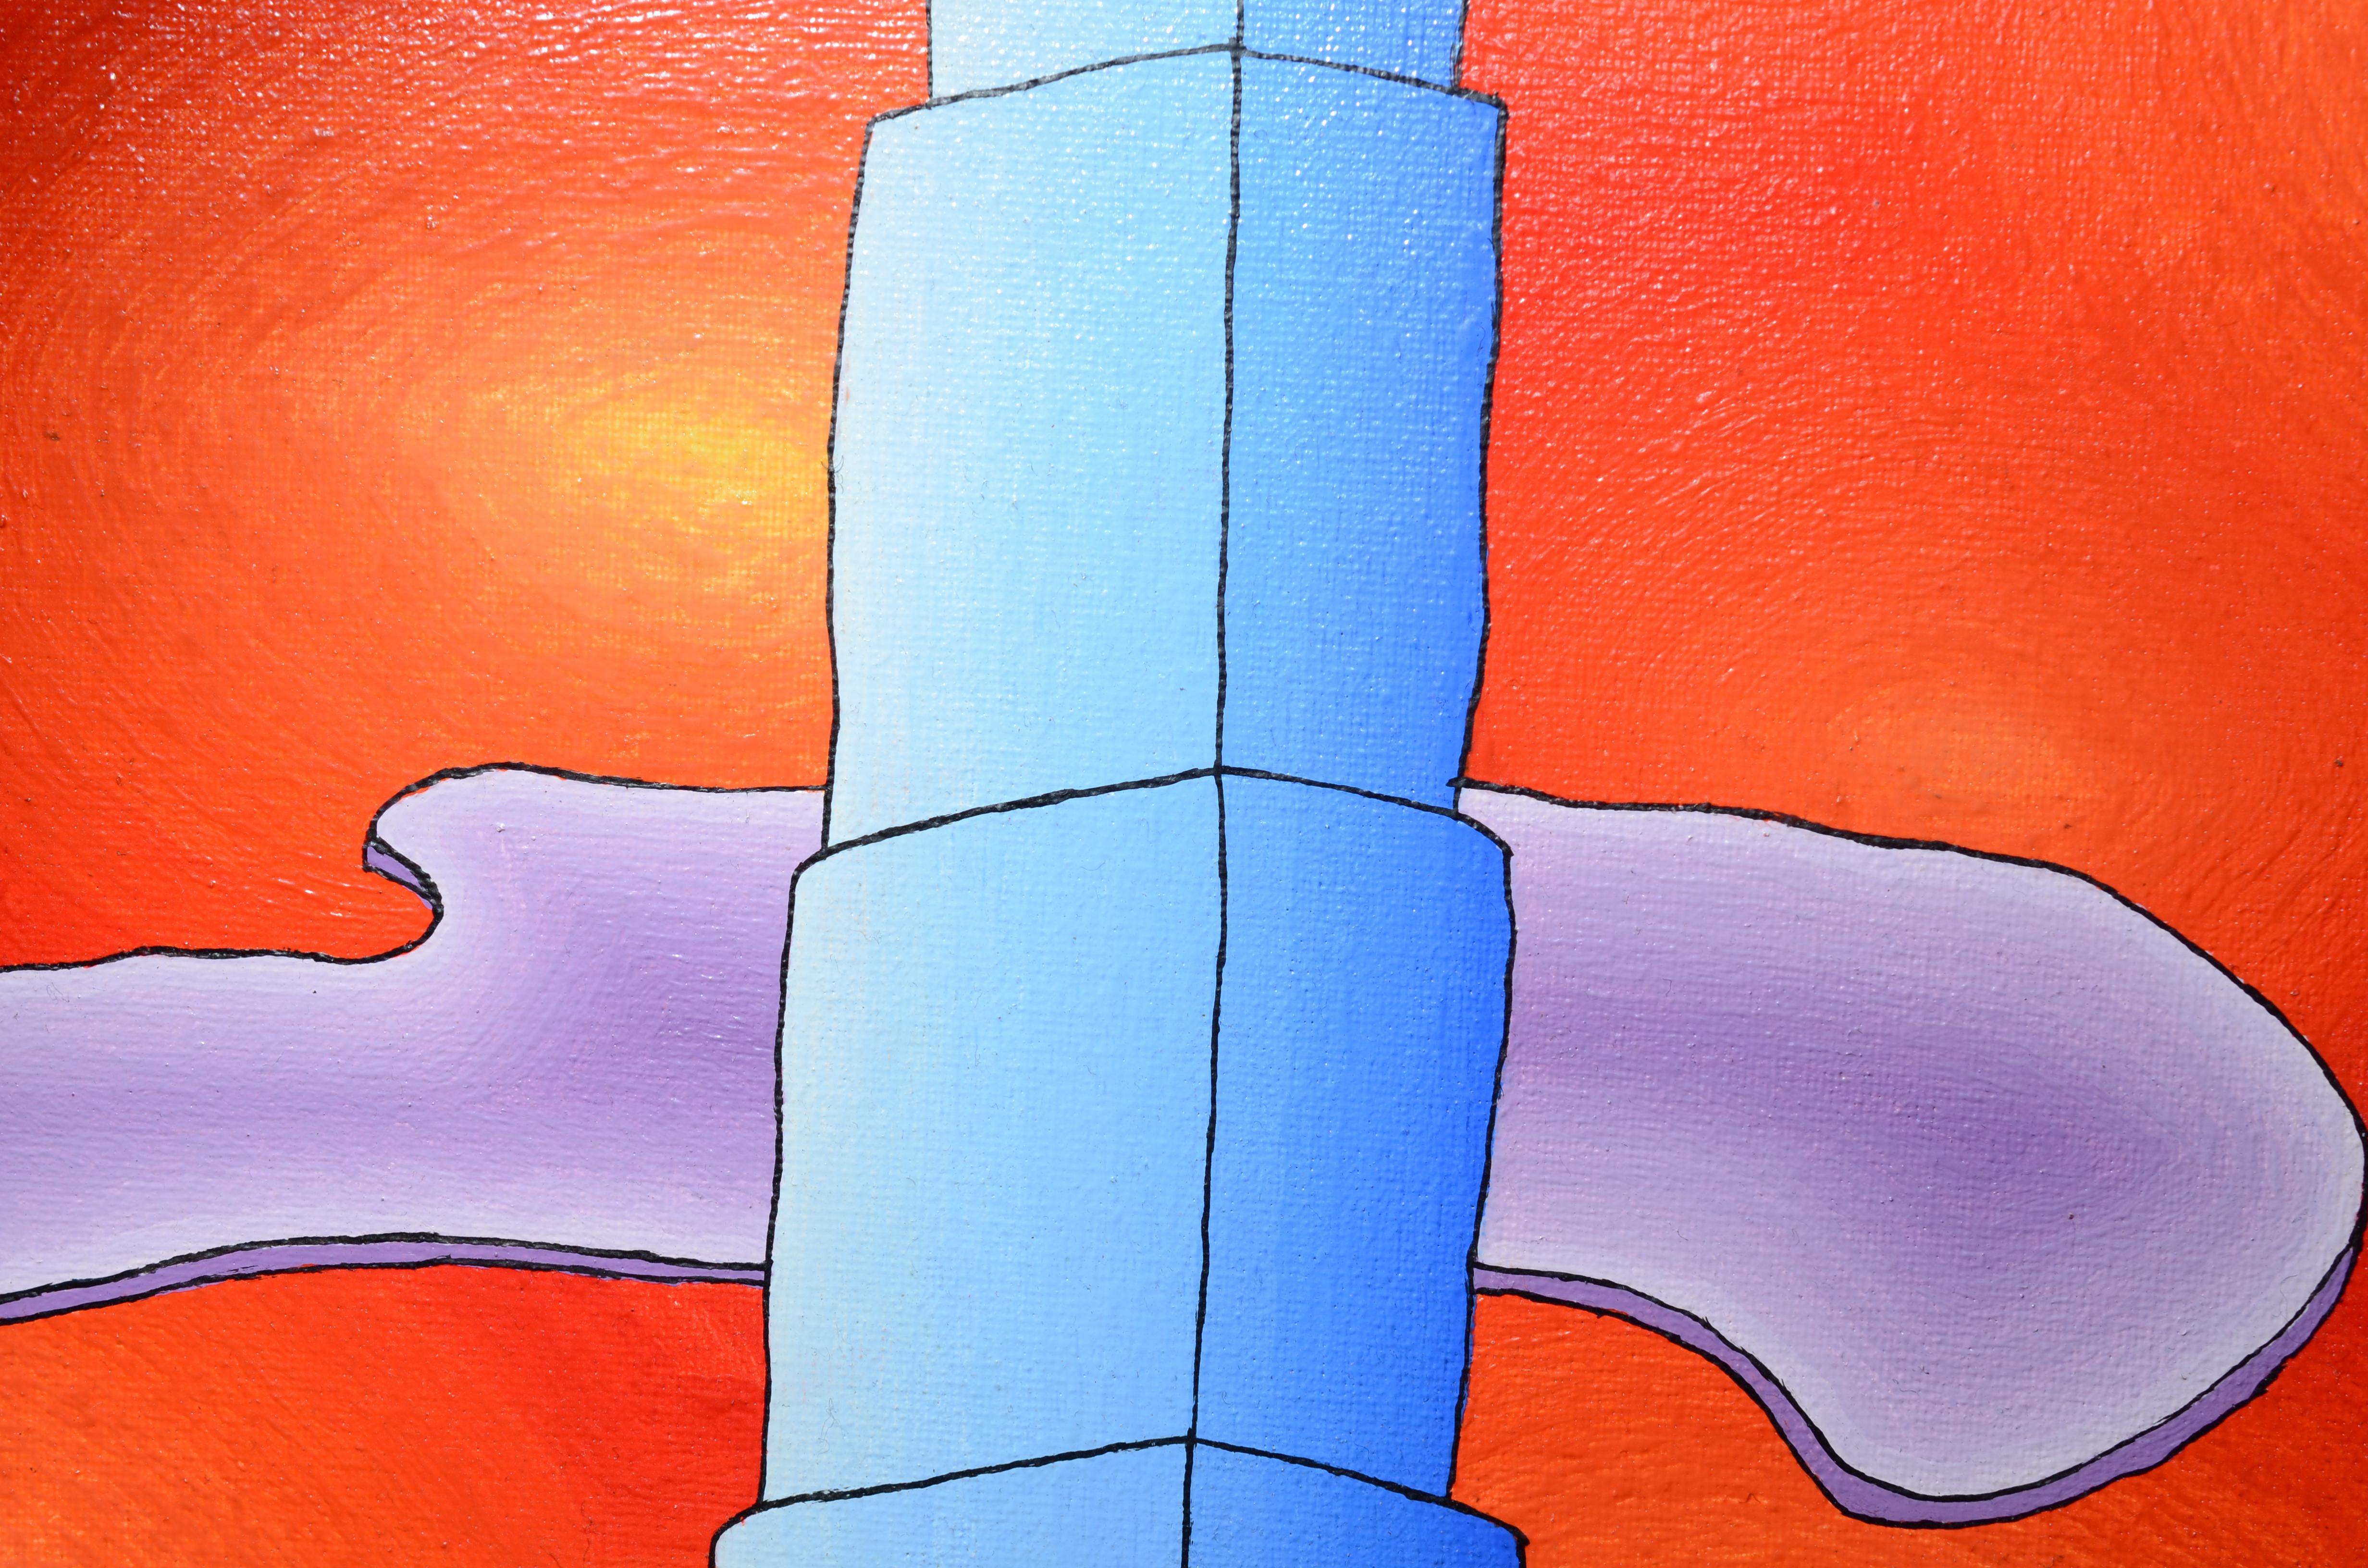 Dieses Kunstwerk zeigt blaue Wolkenkratzer vor einem roten Himmel mit flachen, lilafarbenen Wolken.  Zahlreiche gelb-orangefarbene Lichthöfe schweben im roten Himmel.

Dieses Stück ist nicht gerahmt.

Jean-Marc Boissy ist ein talentierter und